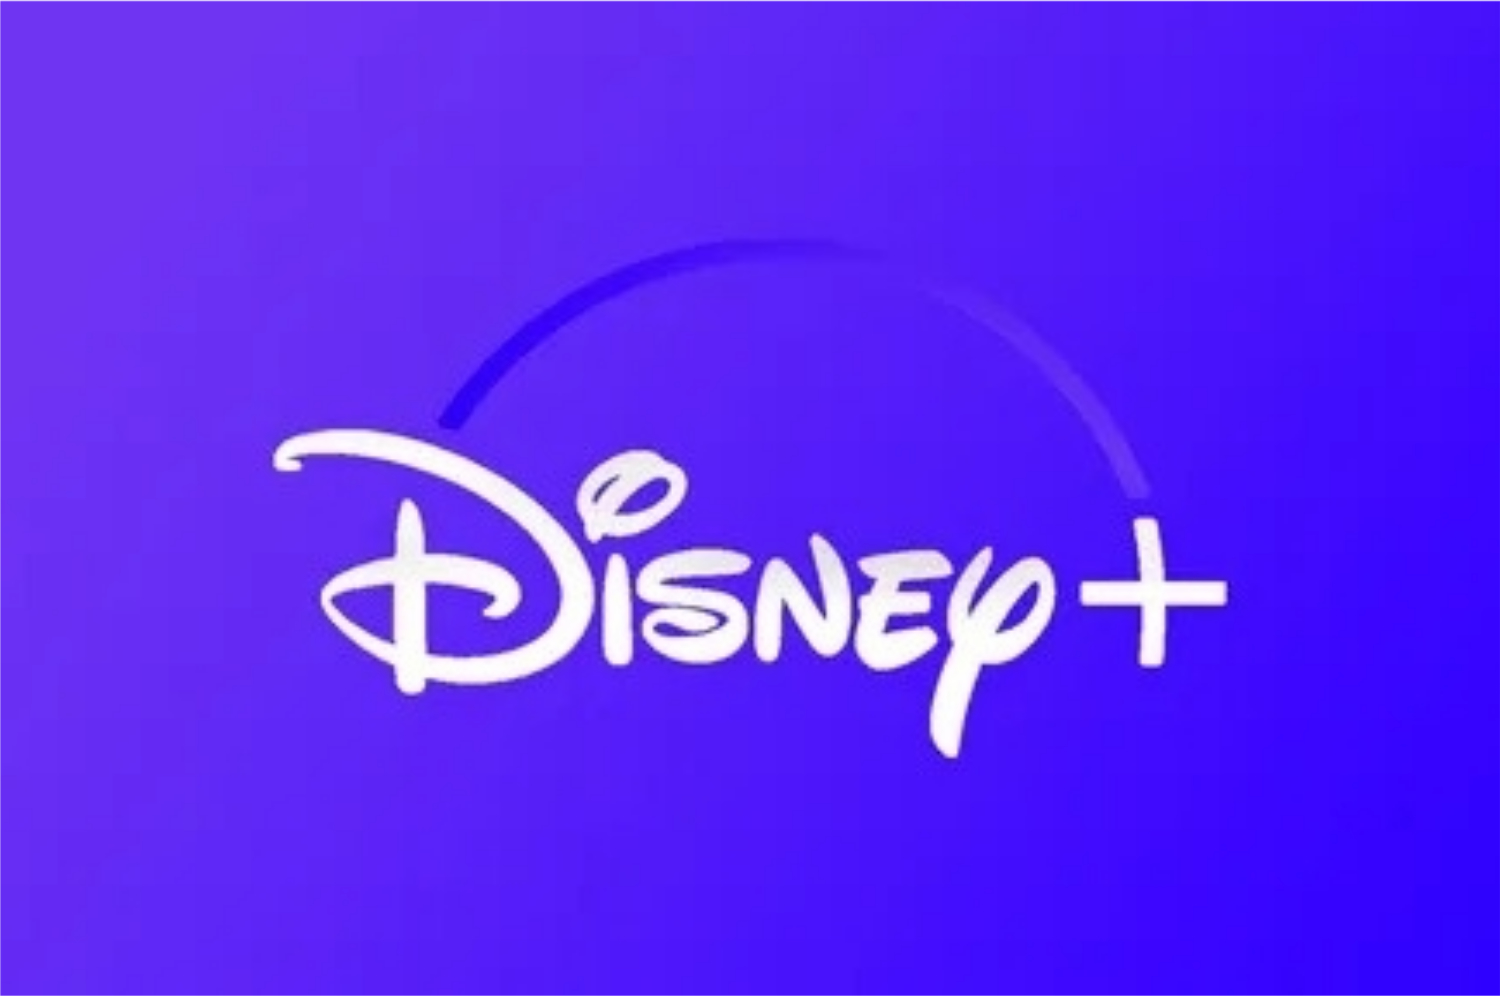 Plano da Disney+ com anúncios chegará em breve - Confira as novidades! (Imagem: Reprodução/ Disney+)